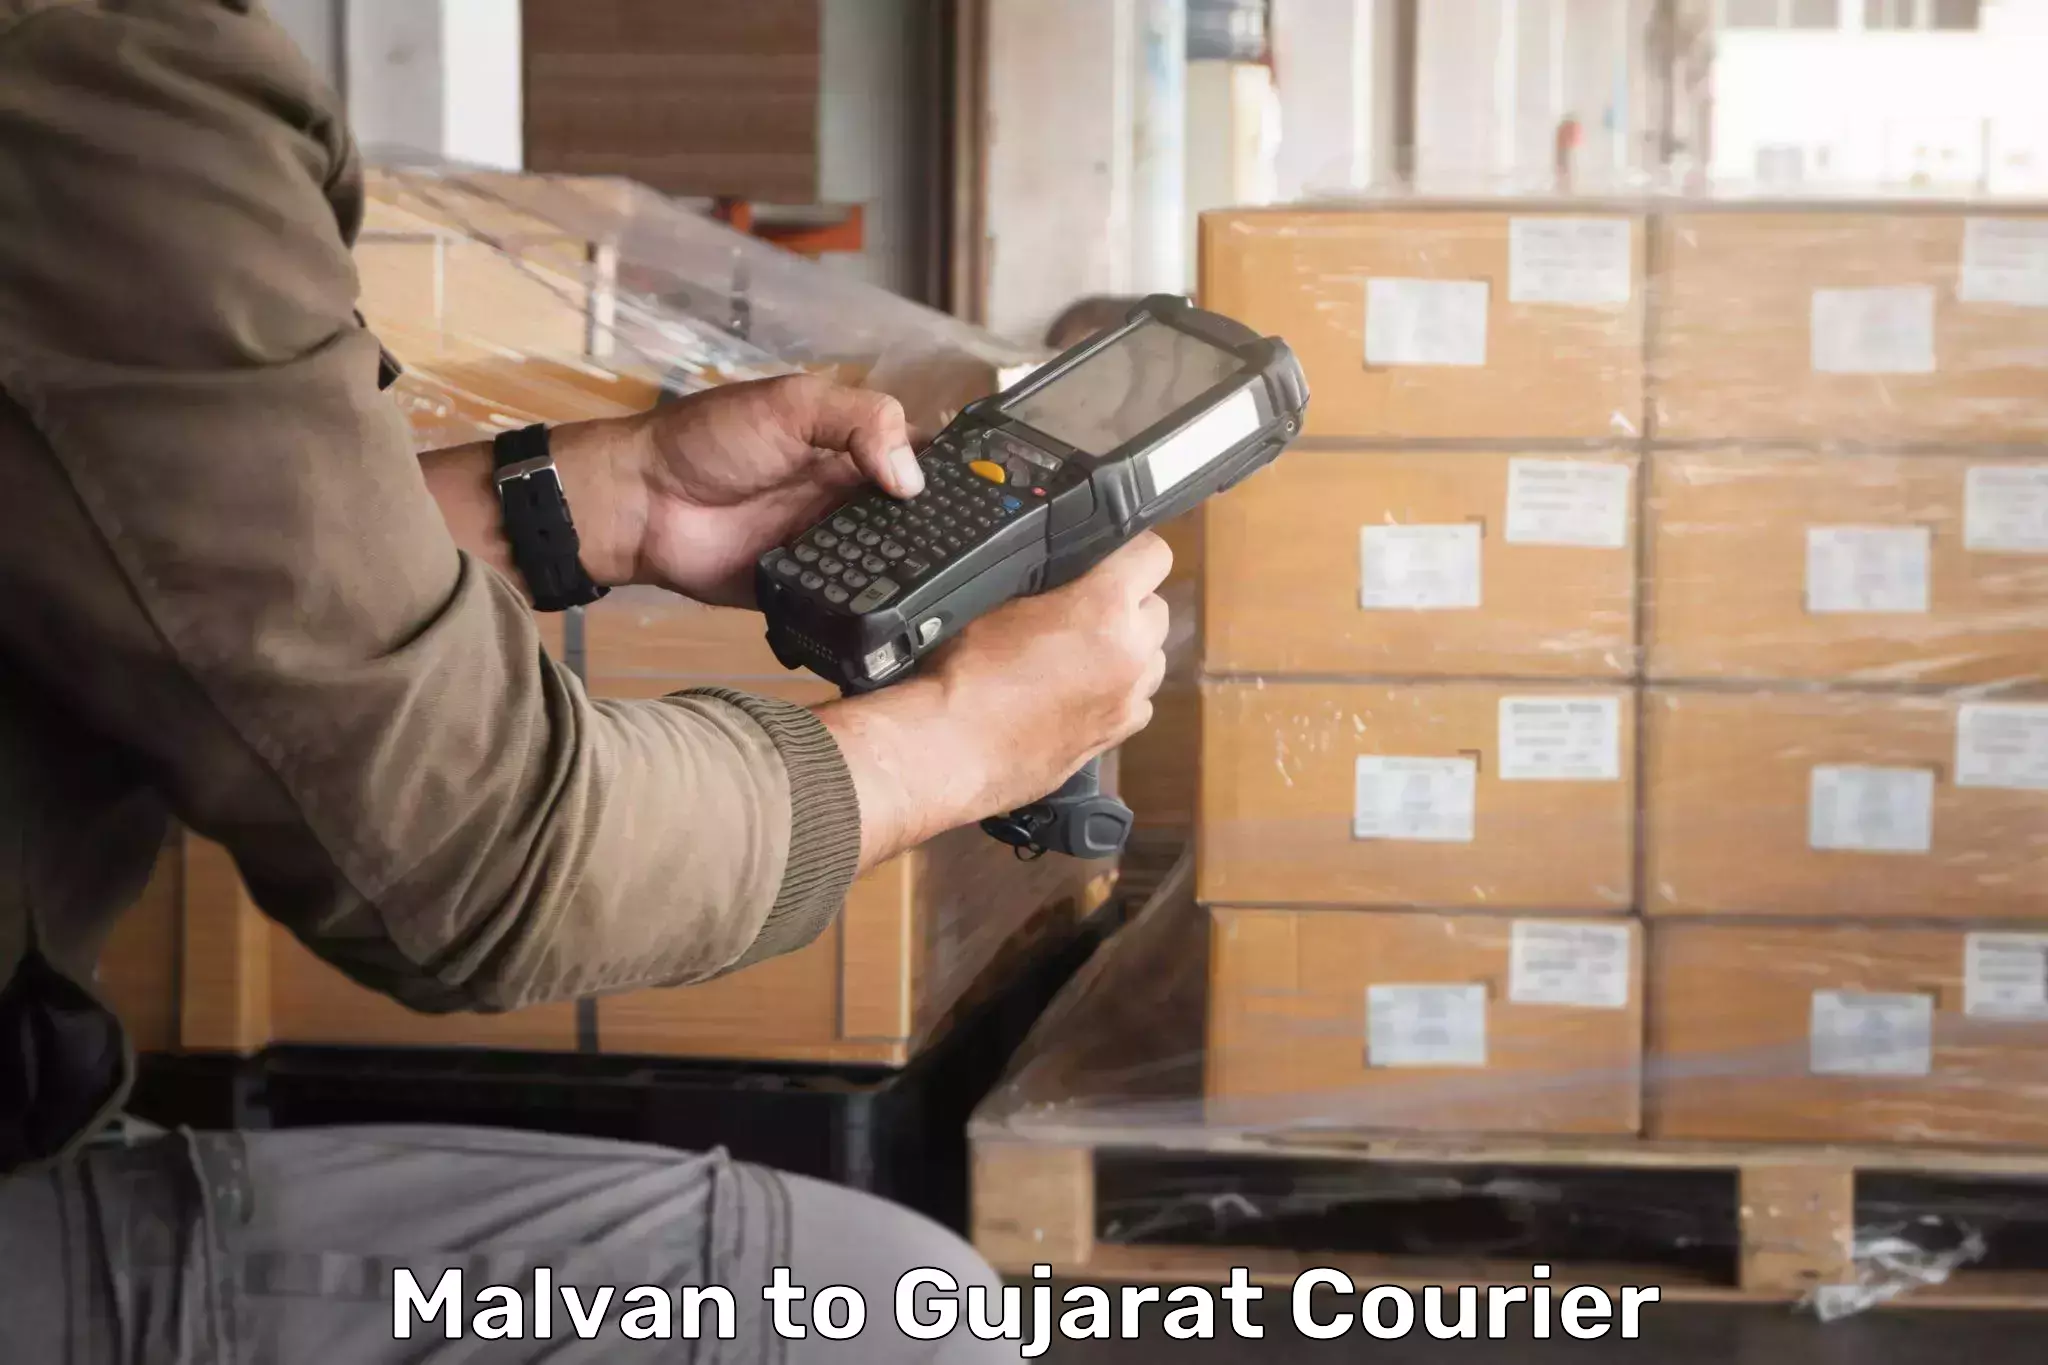 Professional courier services Malvan to Vadodara